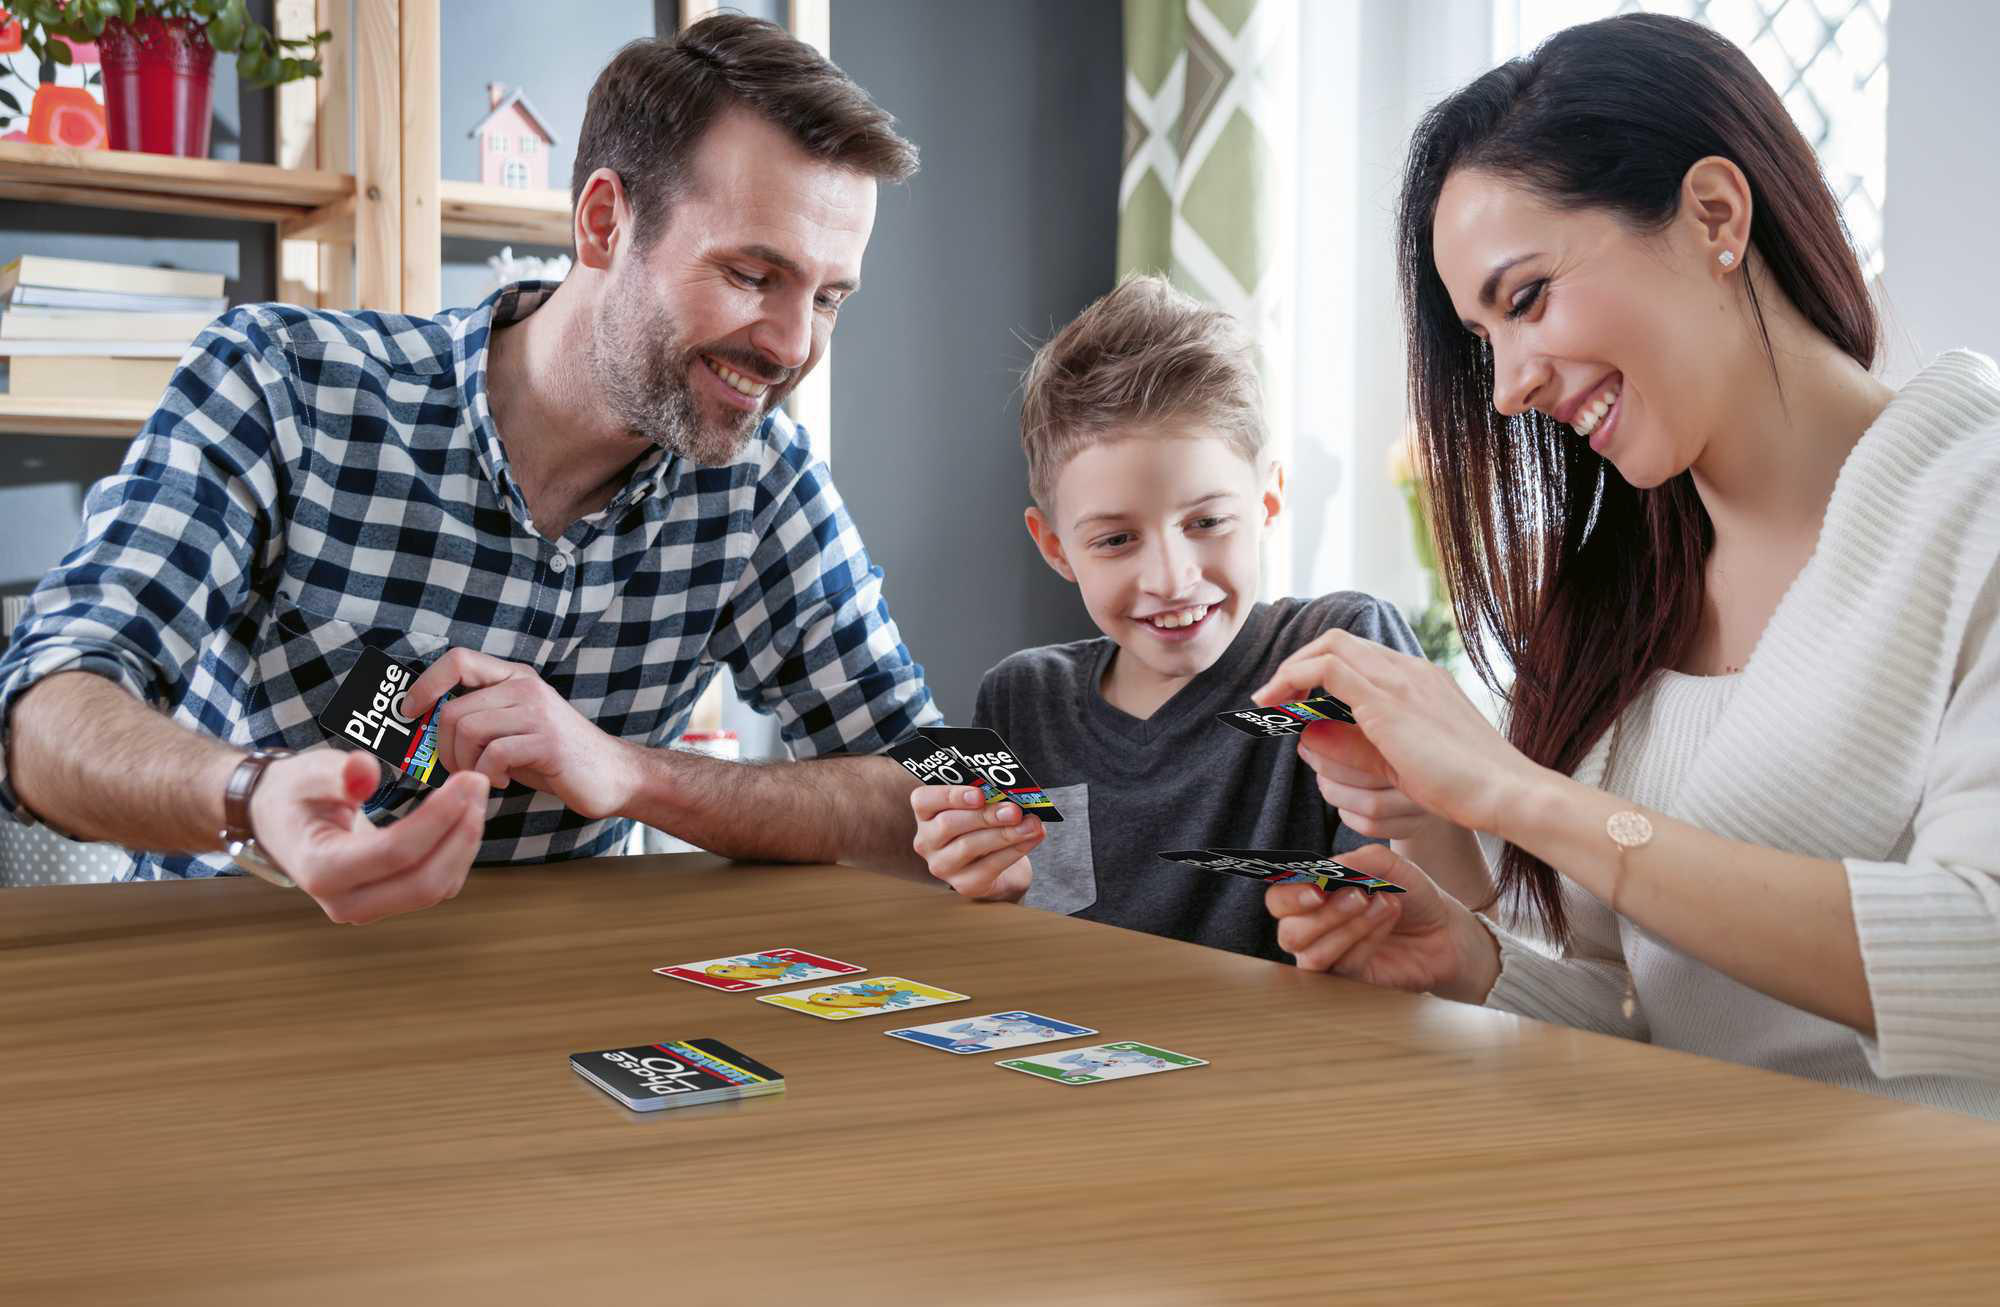 GAMES Mehrfarbig MATTEL 10 Phase Junior Kartenspiel